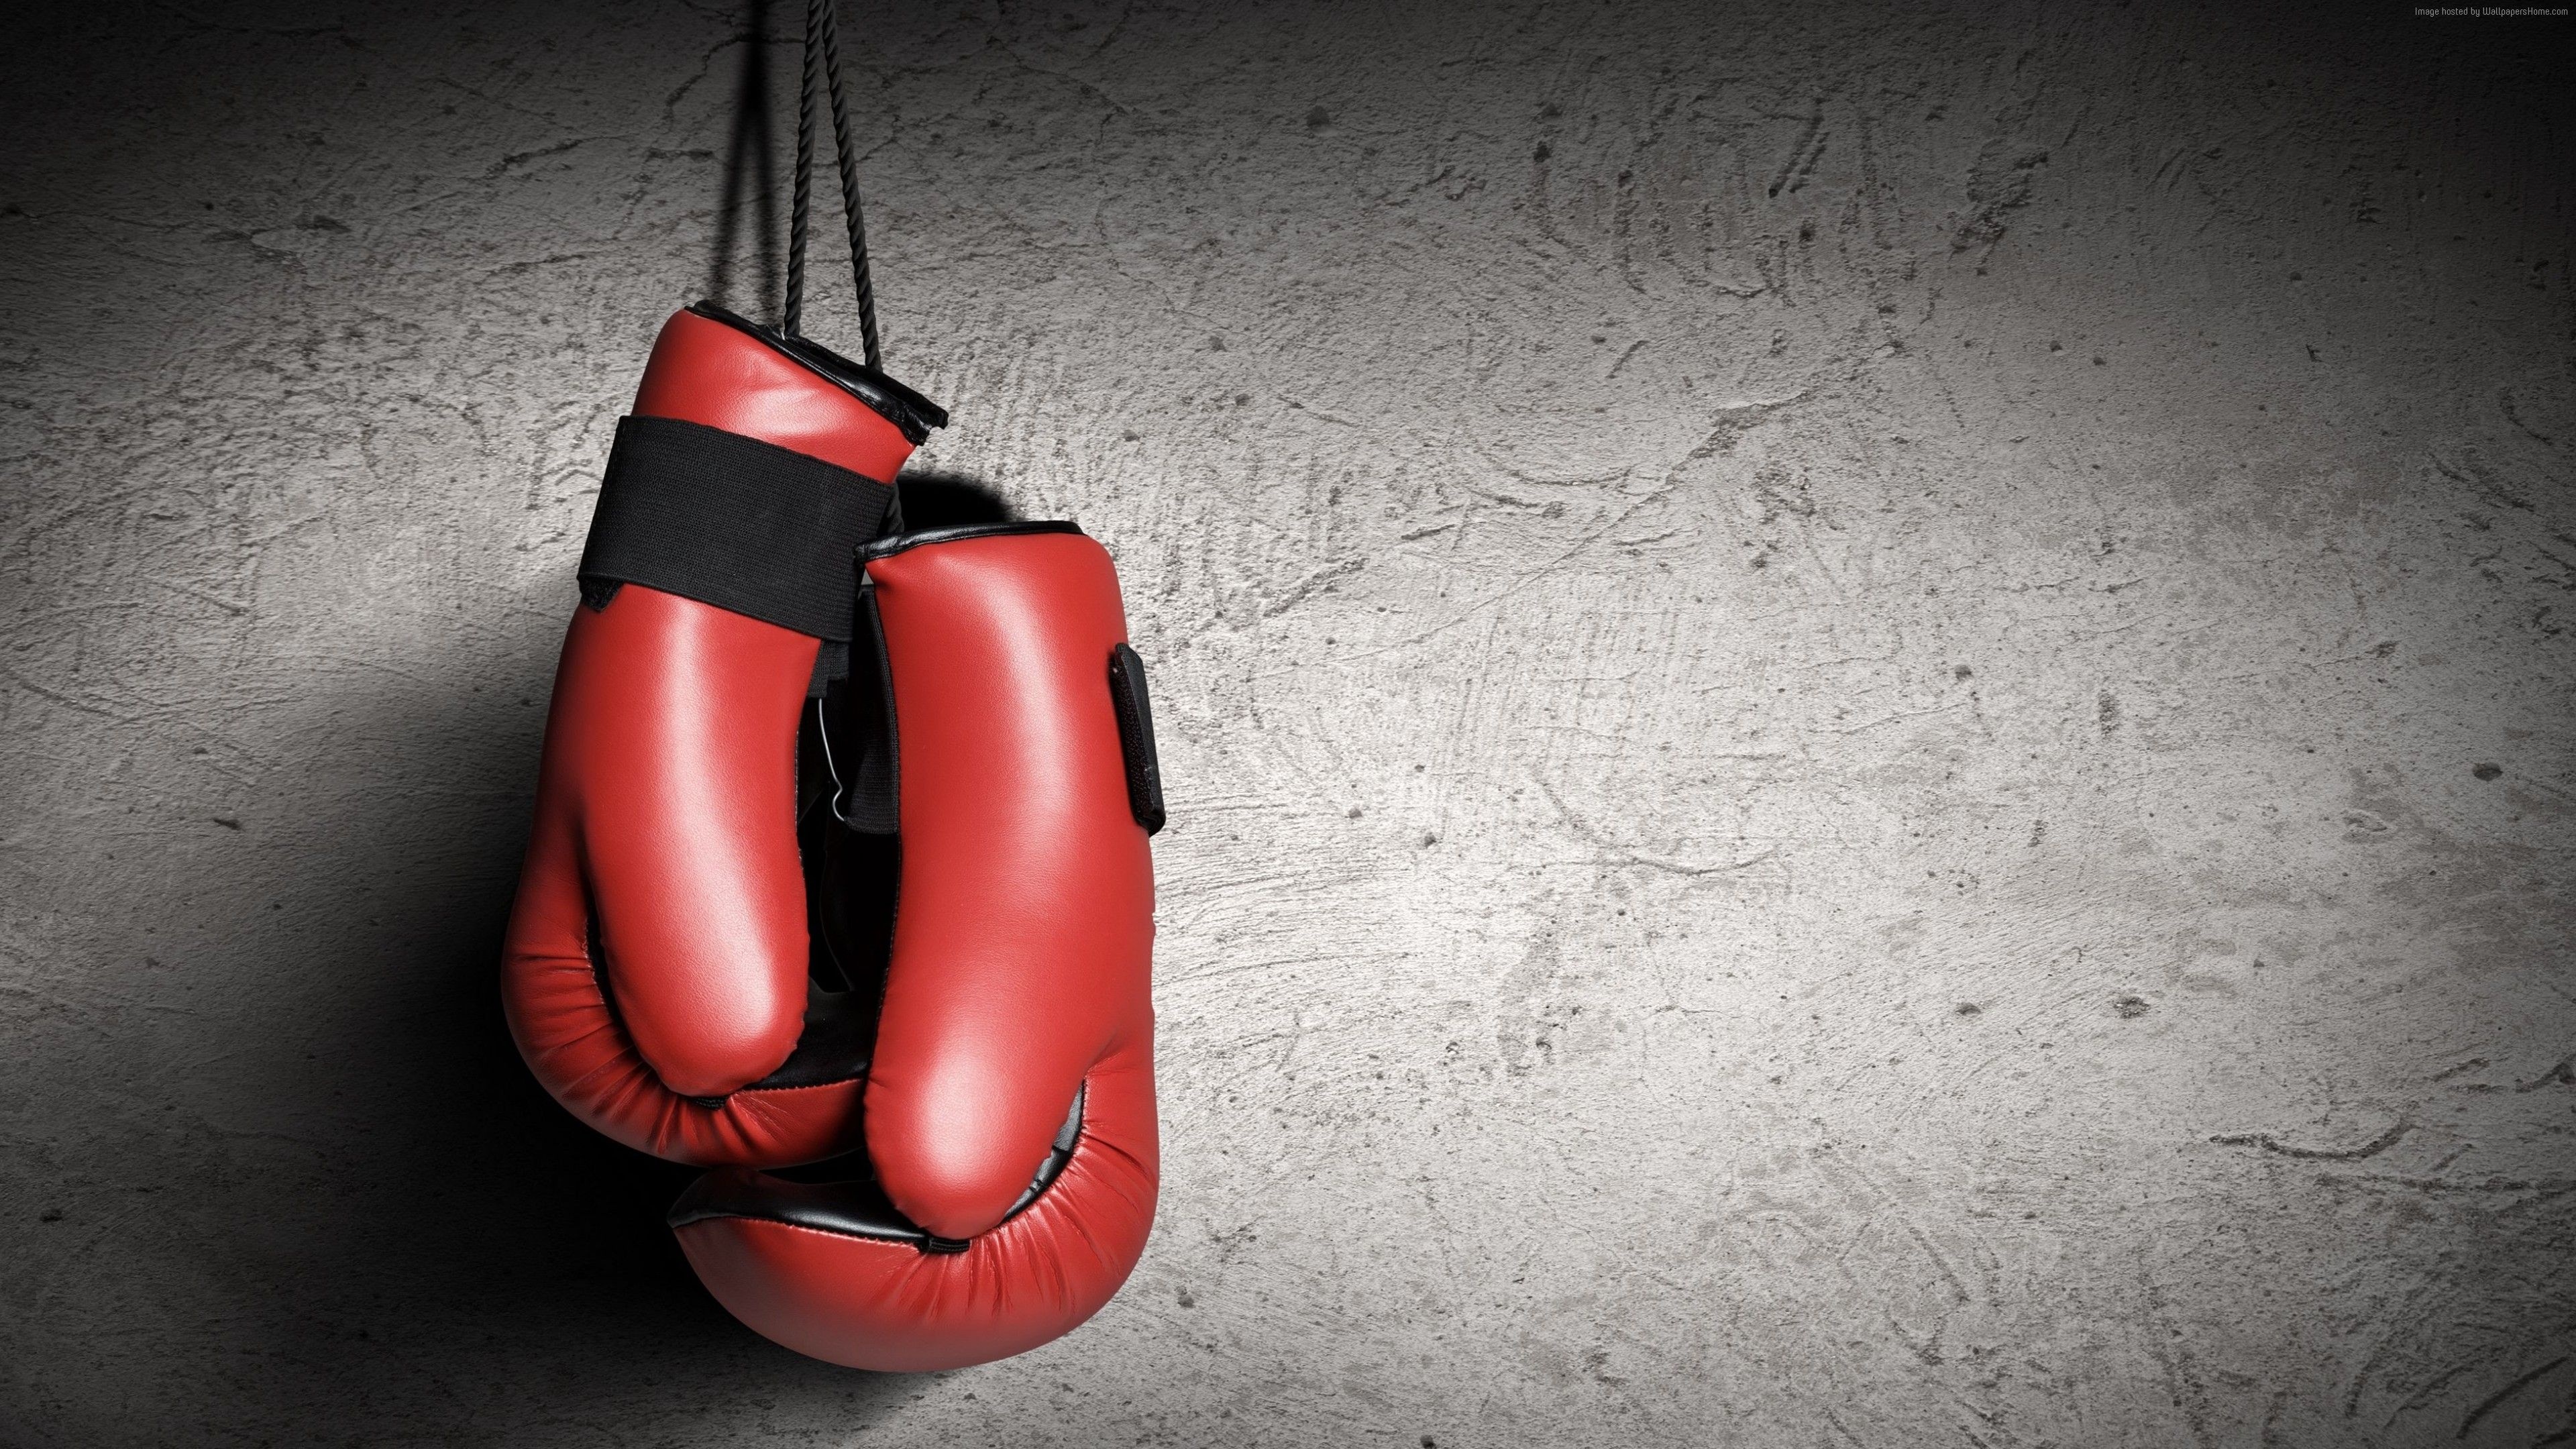 Boxing gloves, Ryan Anderson, Wallpaper post, Sports theme, 3840x2160 4K Desktop